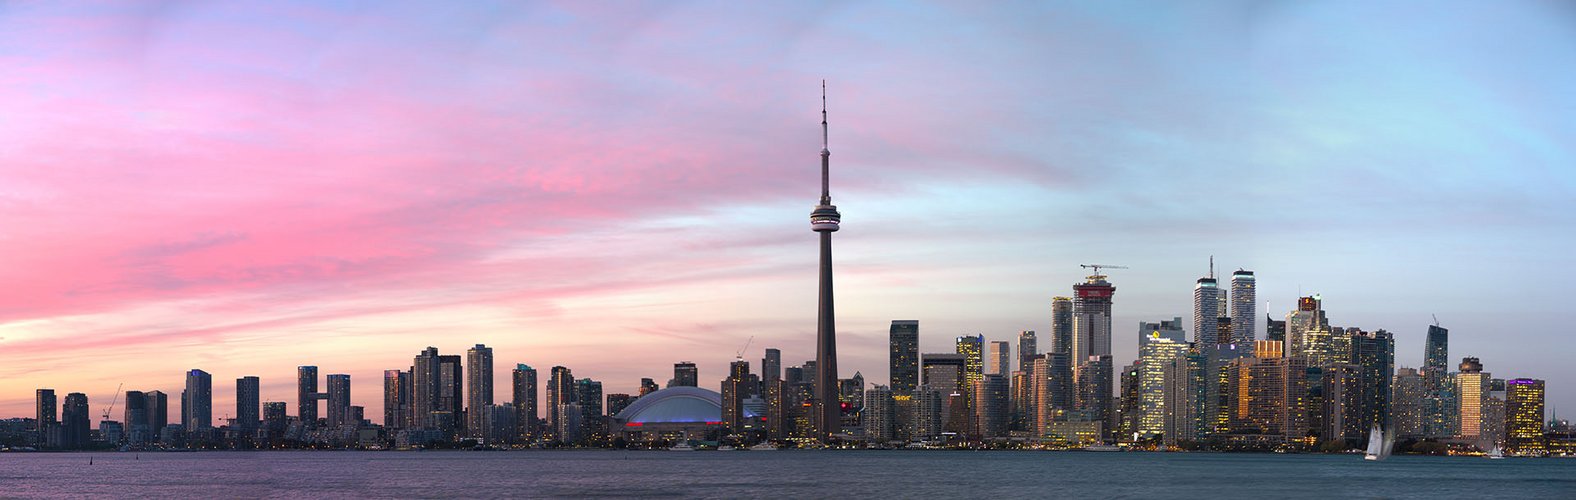 Skyline von Toronto als HDR Panorama